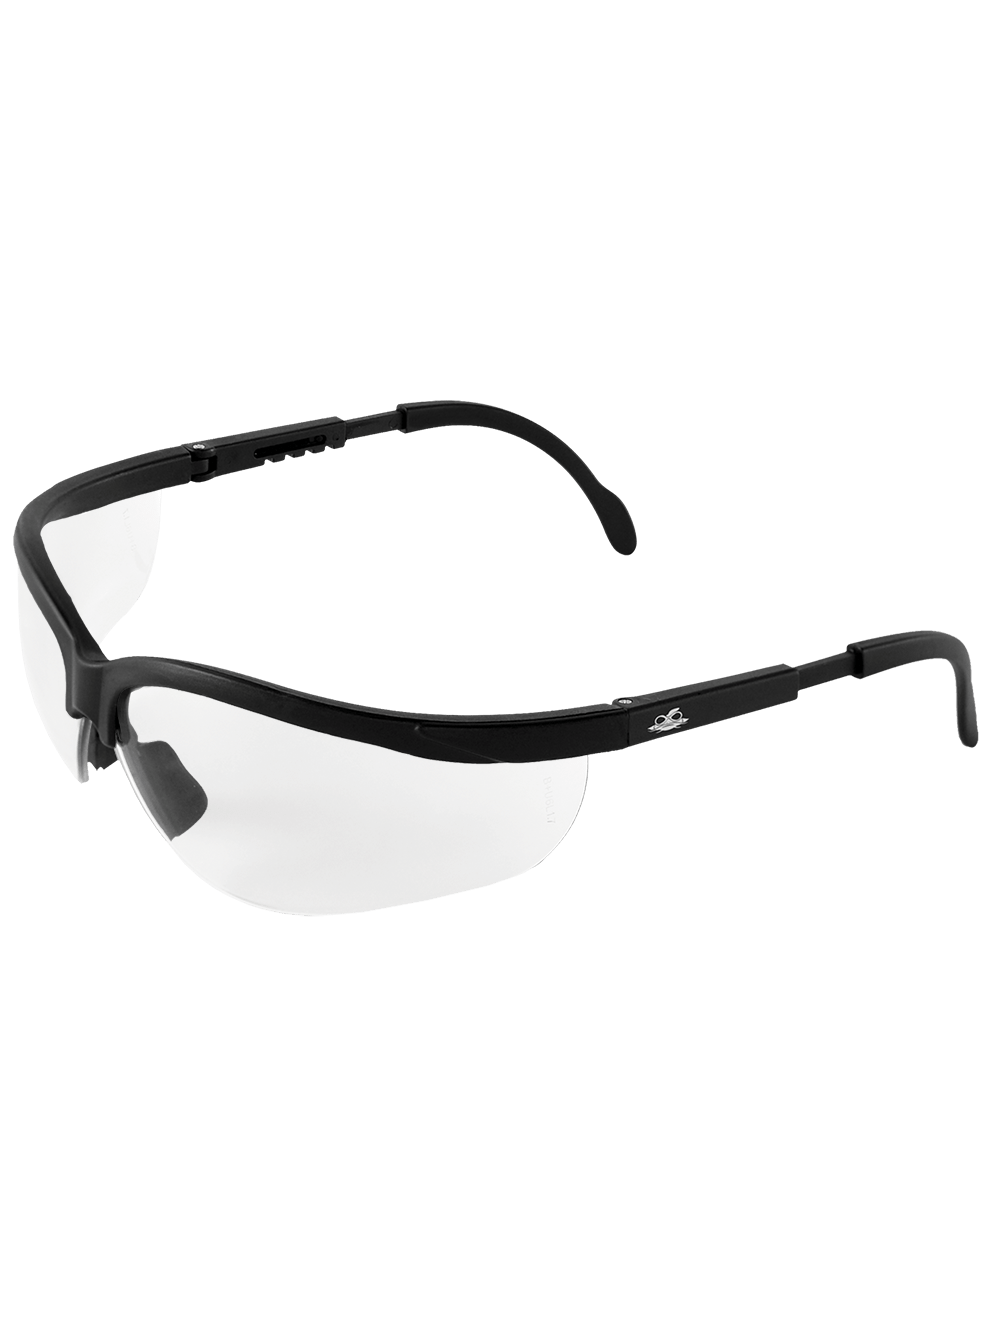 Picuda® Clear Anti-Fog Lens, Matte Black Frame Safety Glasses - BH461AF